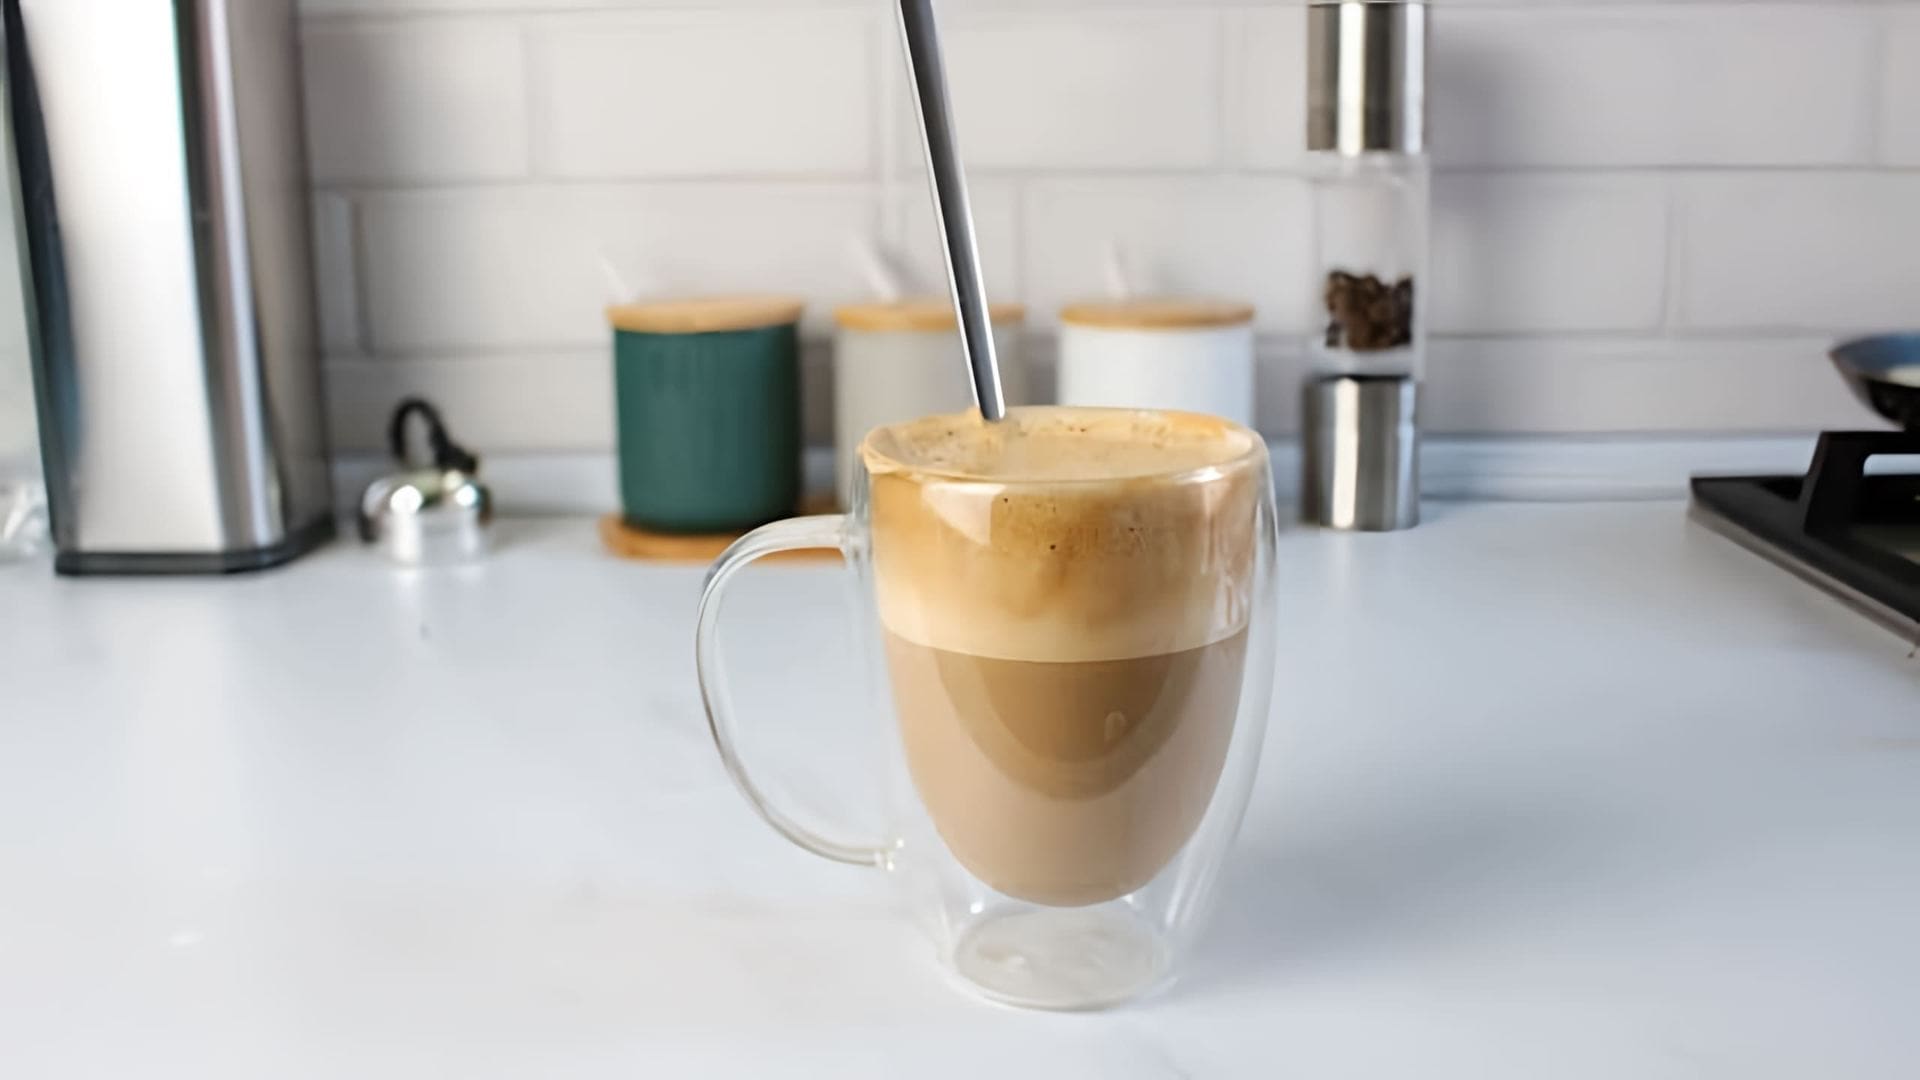 В этом видео демонстрируется рецепт идеального кофе с пенкой, который можно приготовить в домашних условиях без использования кофемашины